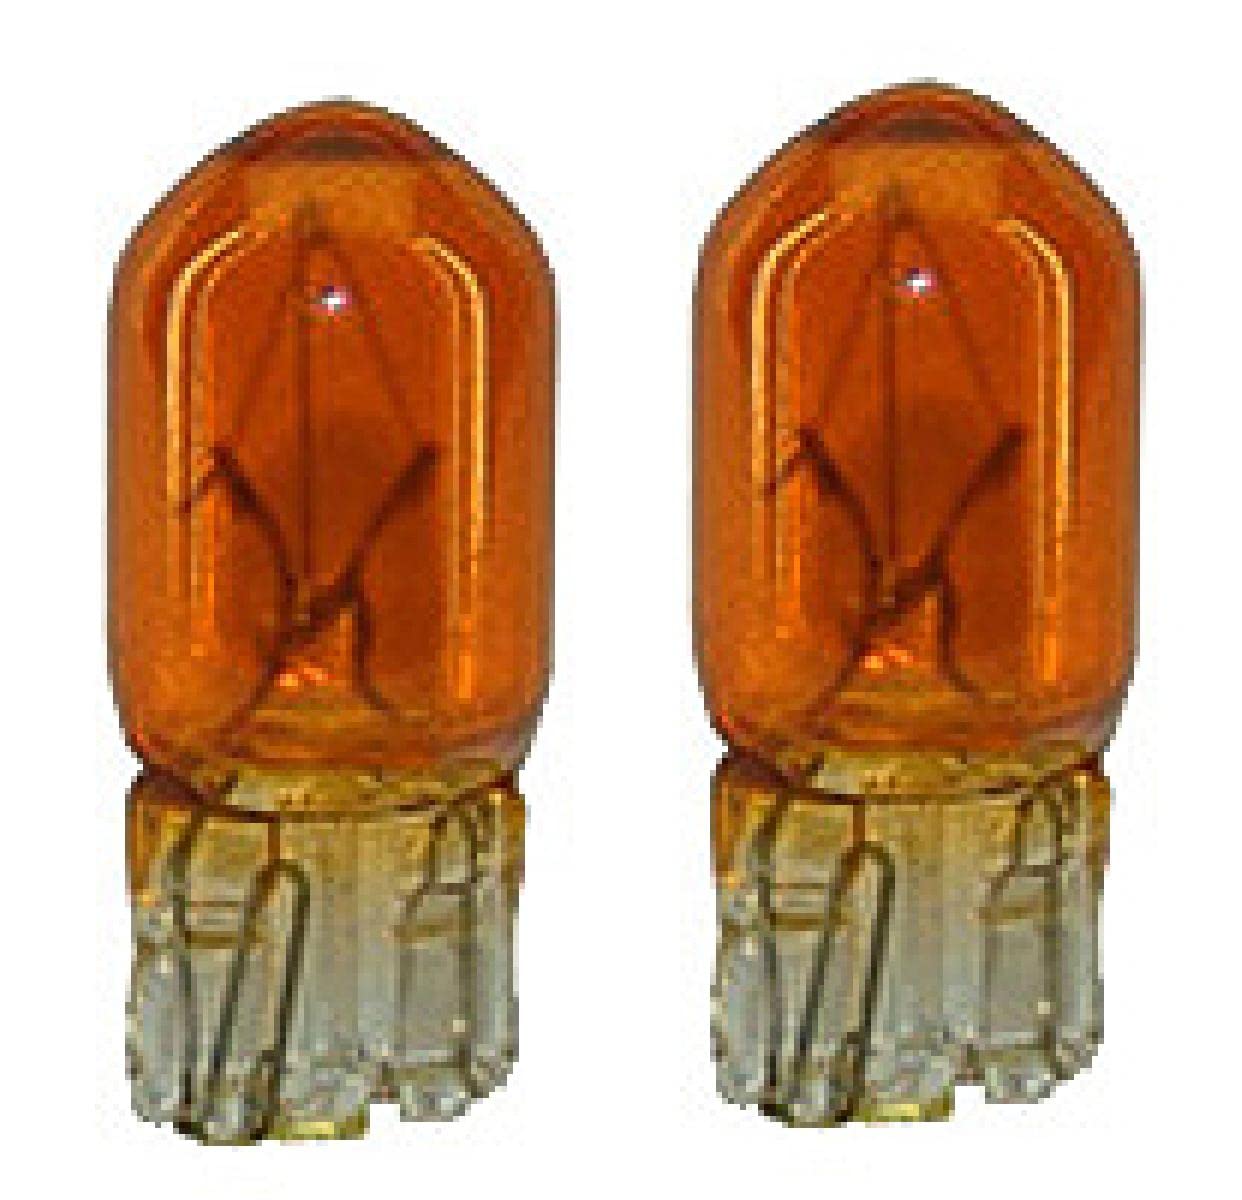 Sumex TESA226 Glühbirne 12 V 5 W, Gelb von Sumex